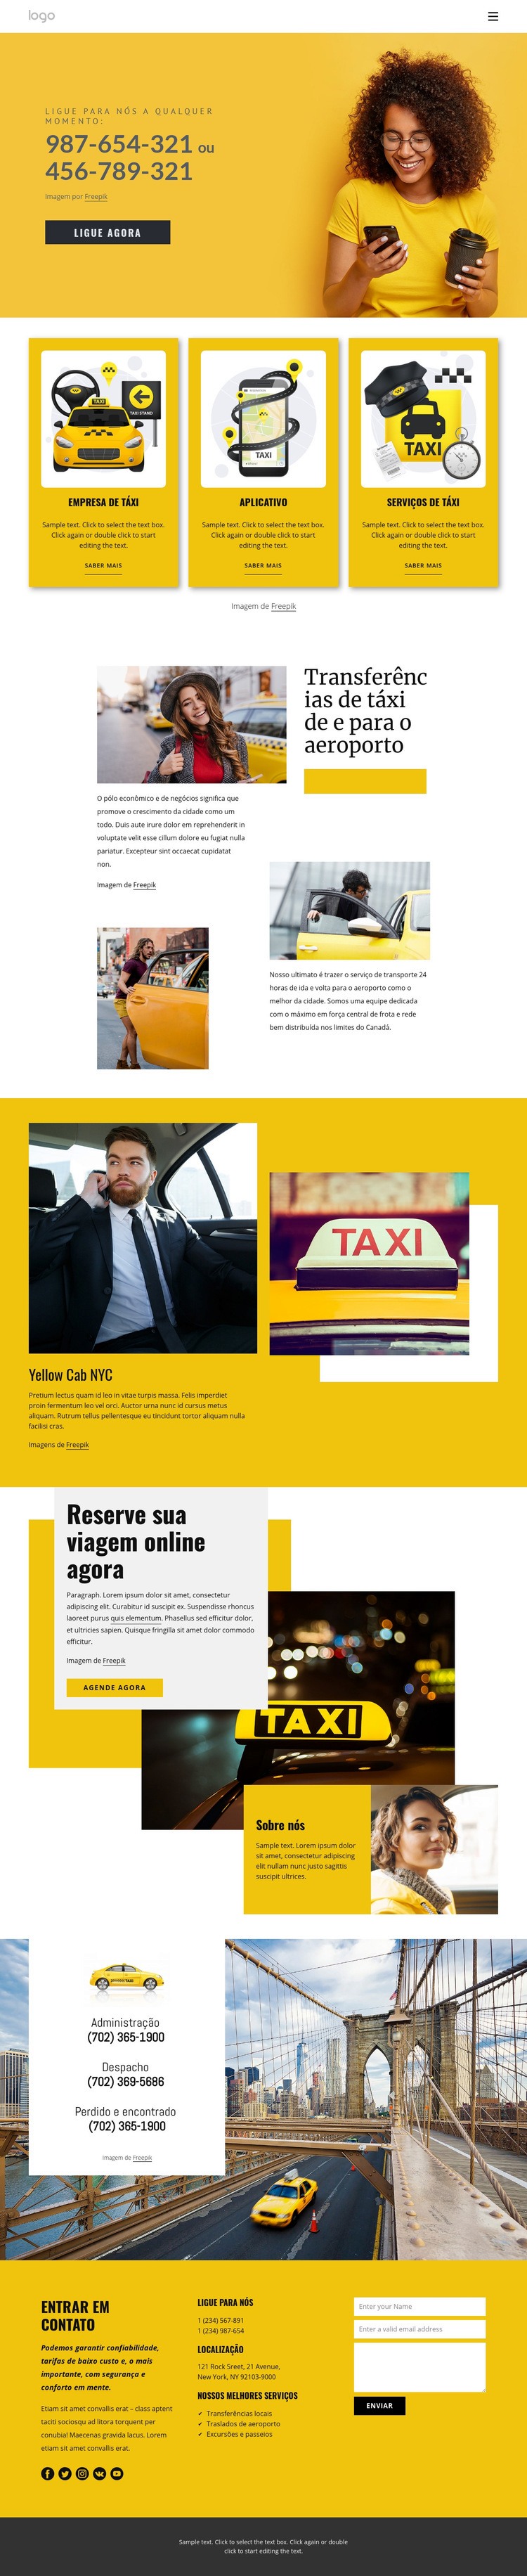 Serviço de táxi de qualidade Modelo HTML5